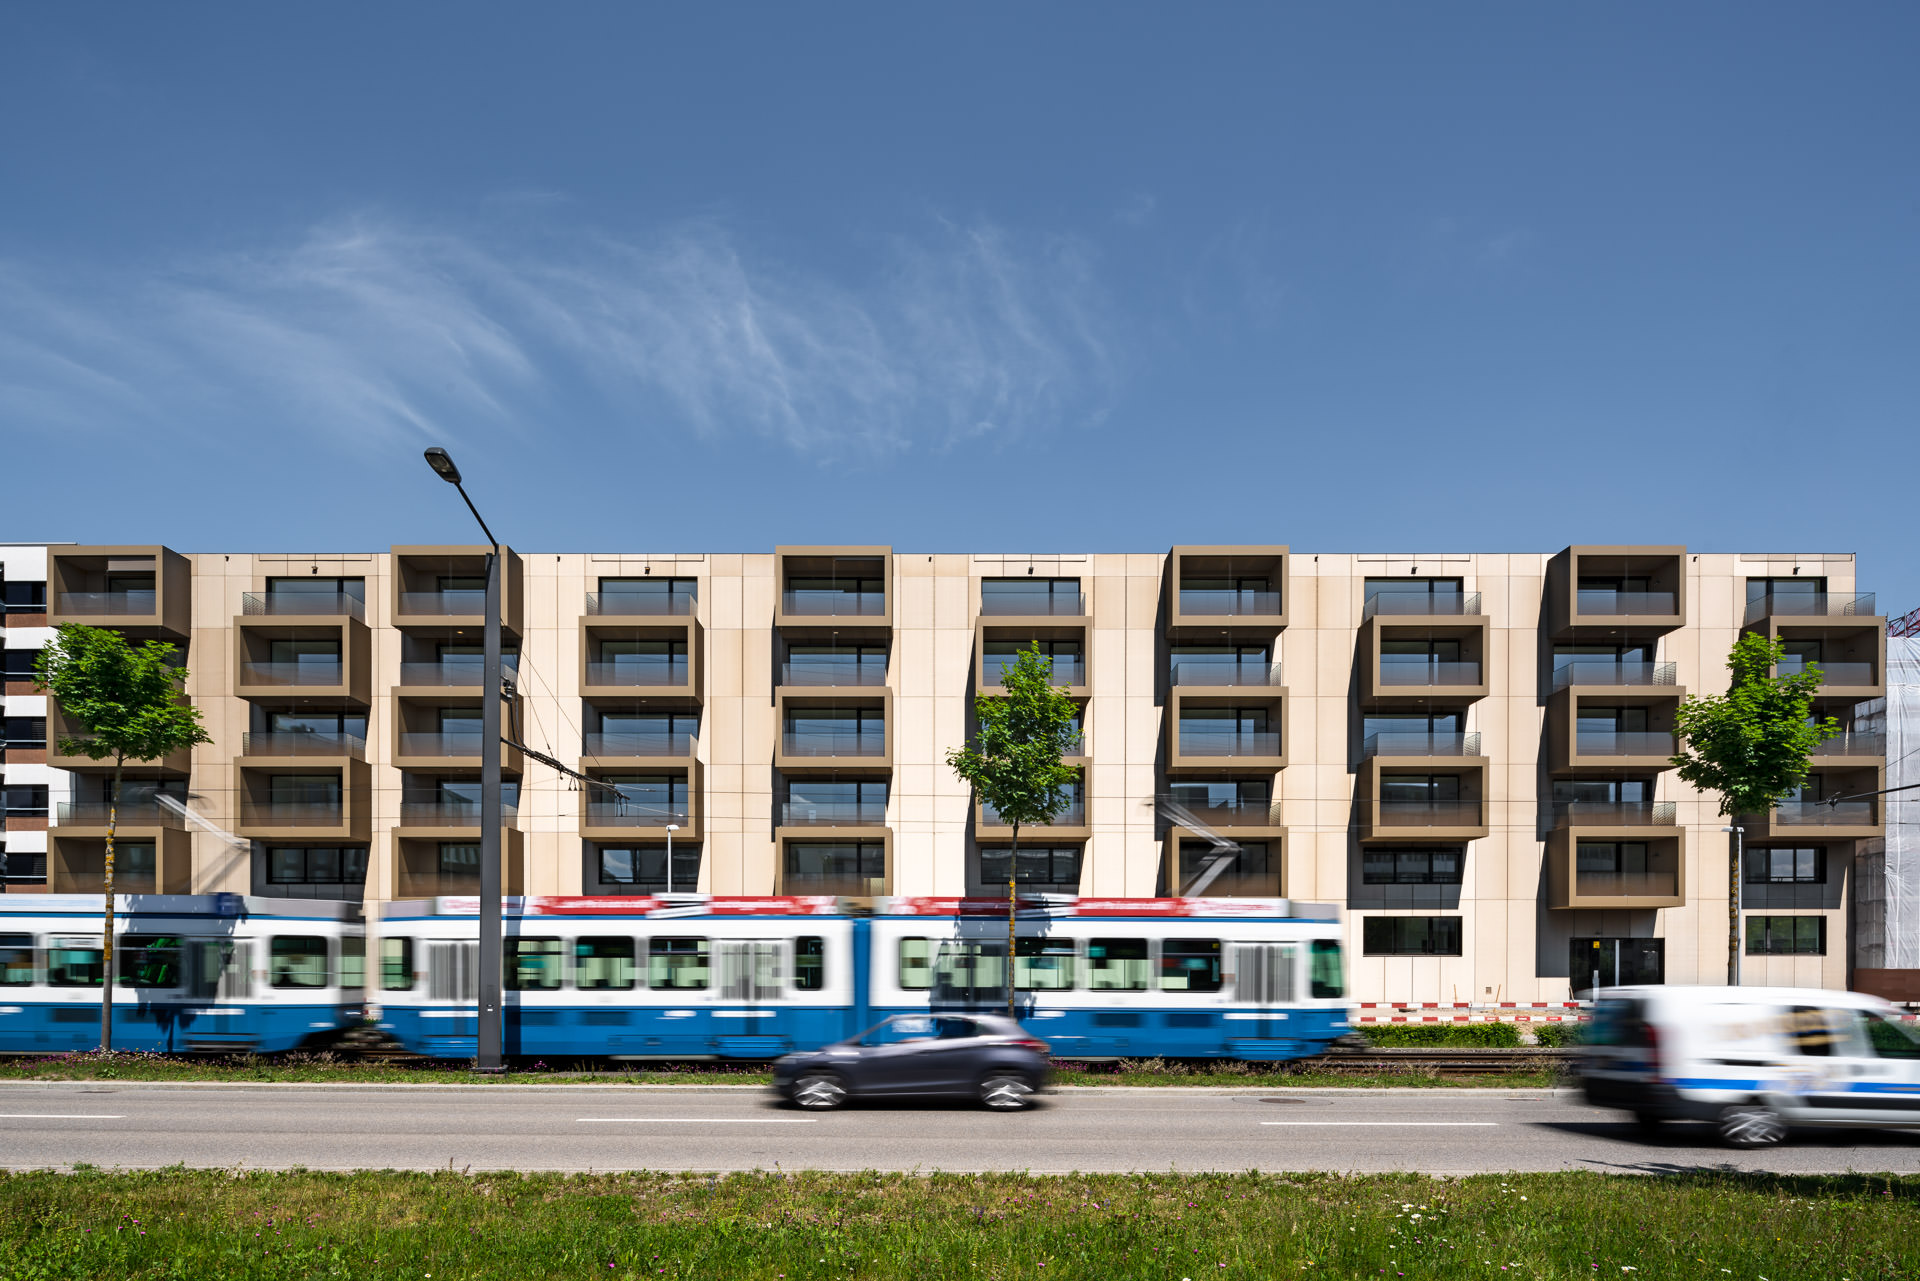 Architectural Photographer Zurich, Philippe Wiget - My Cocoon, TwoGether, Glattpark, Zurich, Switzerland, Tram, Road